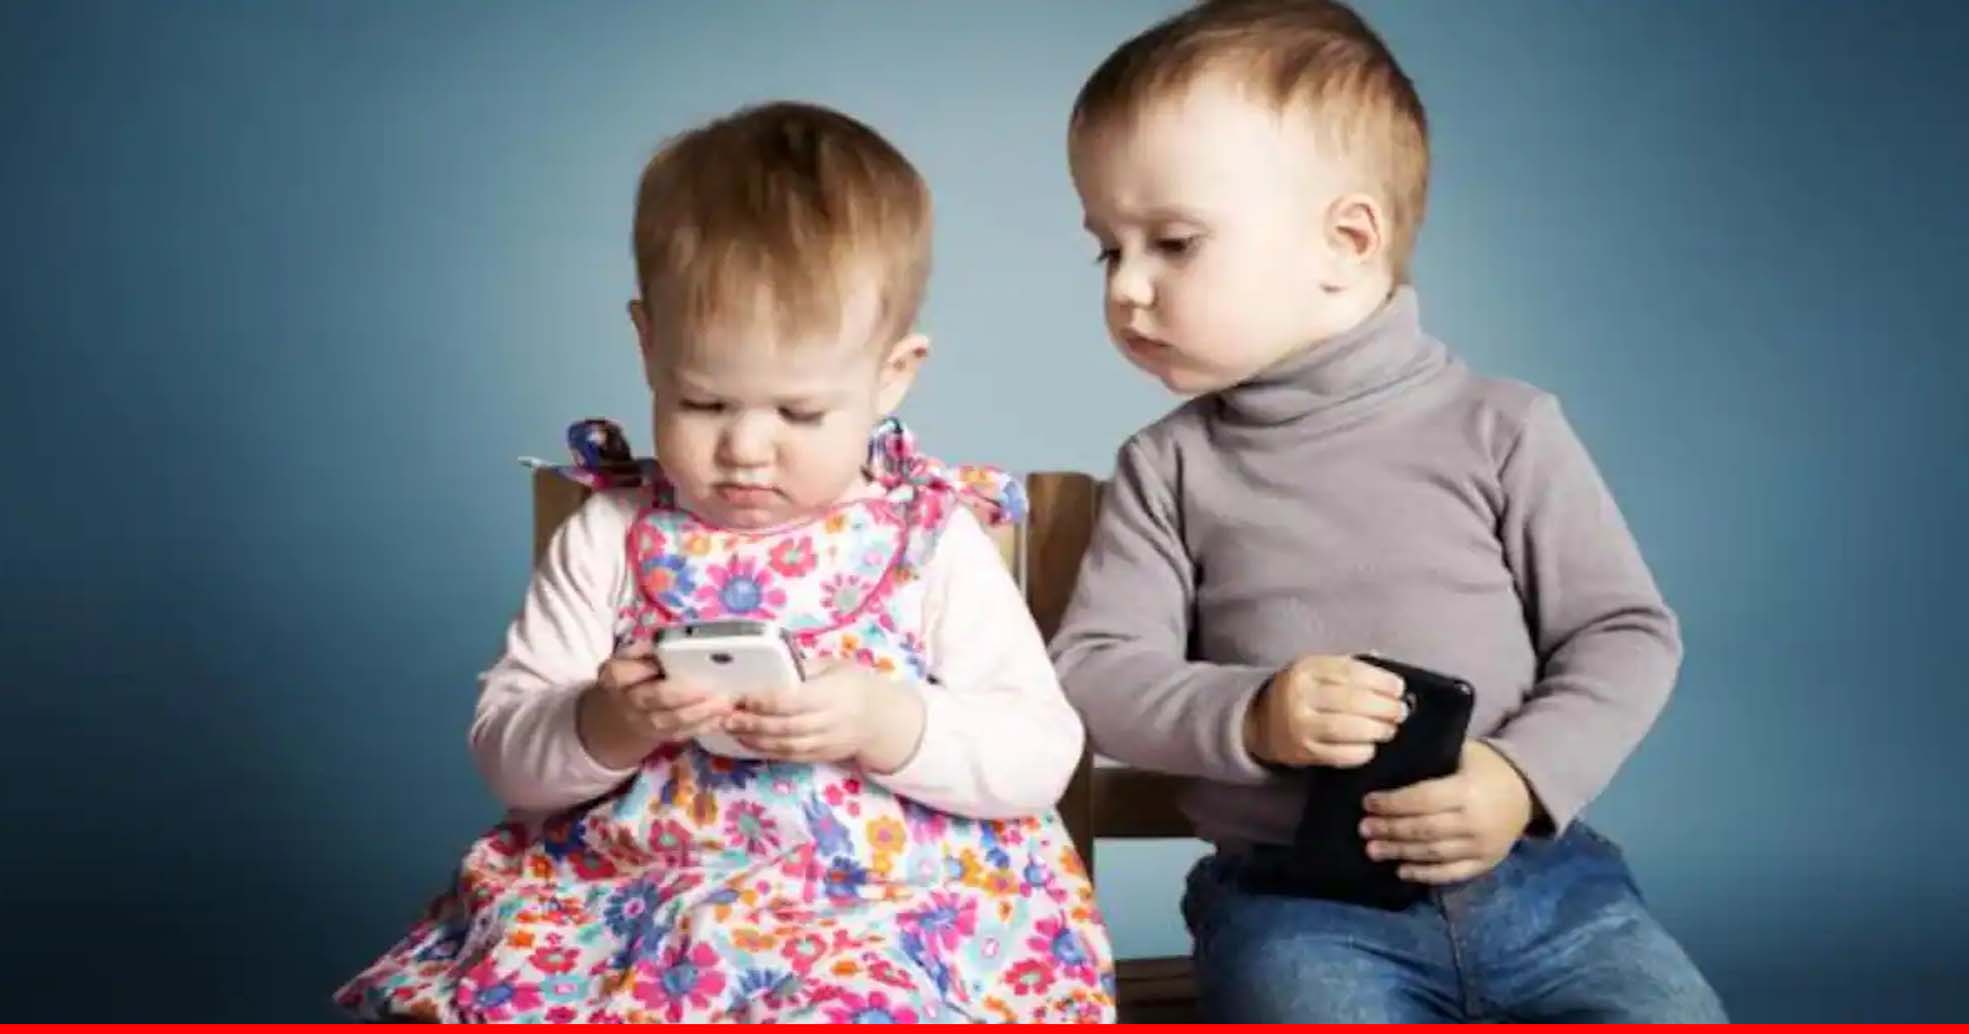 बच्चों को क्यों लग जाती है स्मार्टफोन की लत? जानें कारण और बचाव